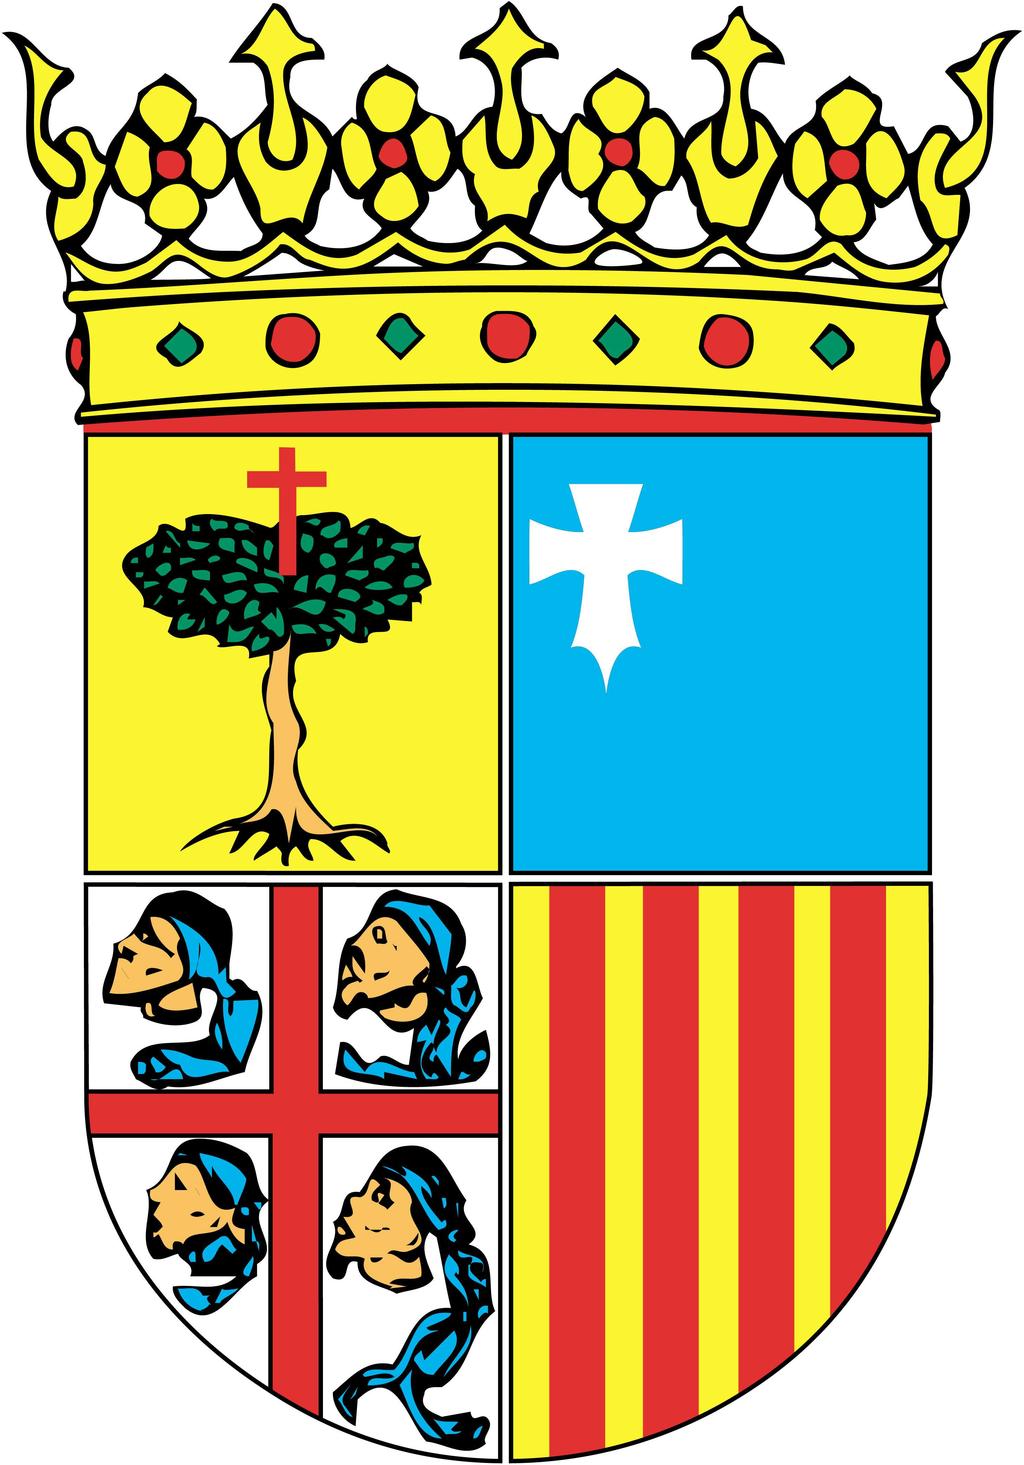 RE 096/2014 Acuerdo 58/2014, de 1 de octubre de 2014, del Tribunal Administrativo de Contratos Públicos de Aragón, por el que se resuelve el recurso especial interpuesto por el Colegio Oficial de